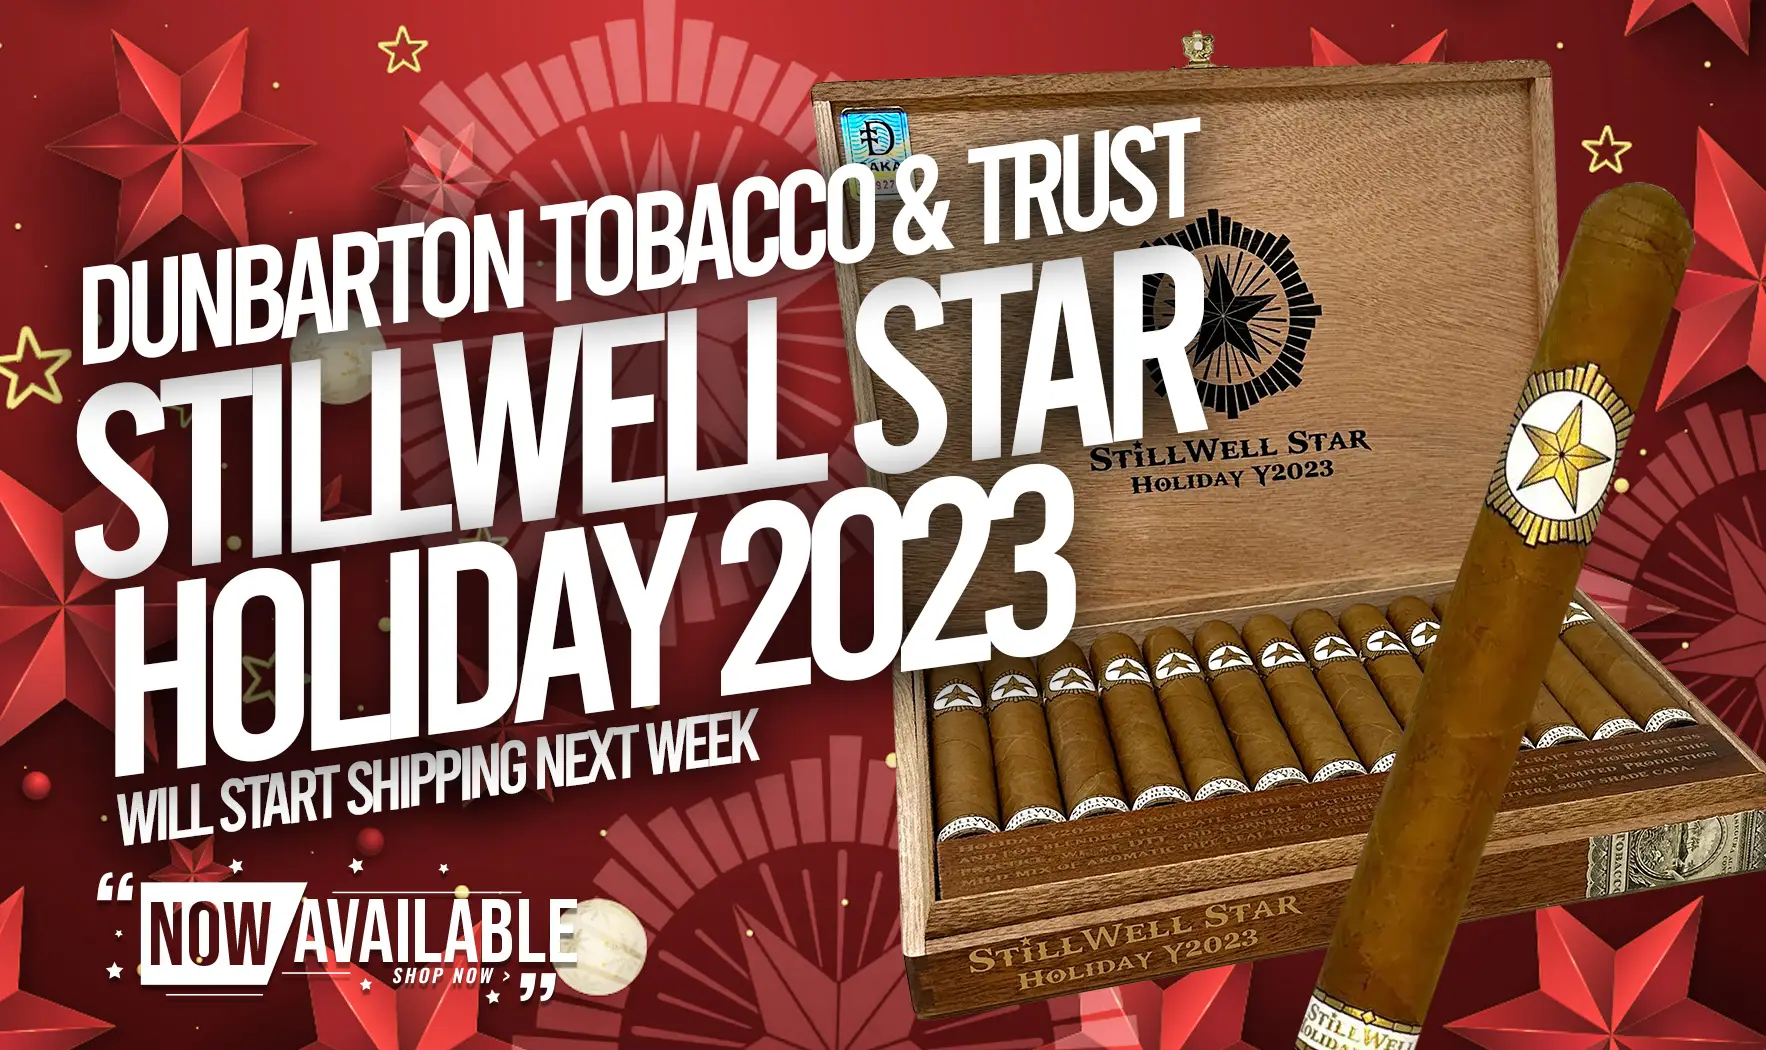 Stillwell Star by Dunbarton Tobacco & Trust Holiday Y2023